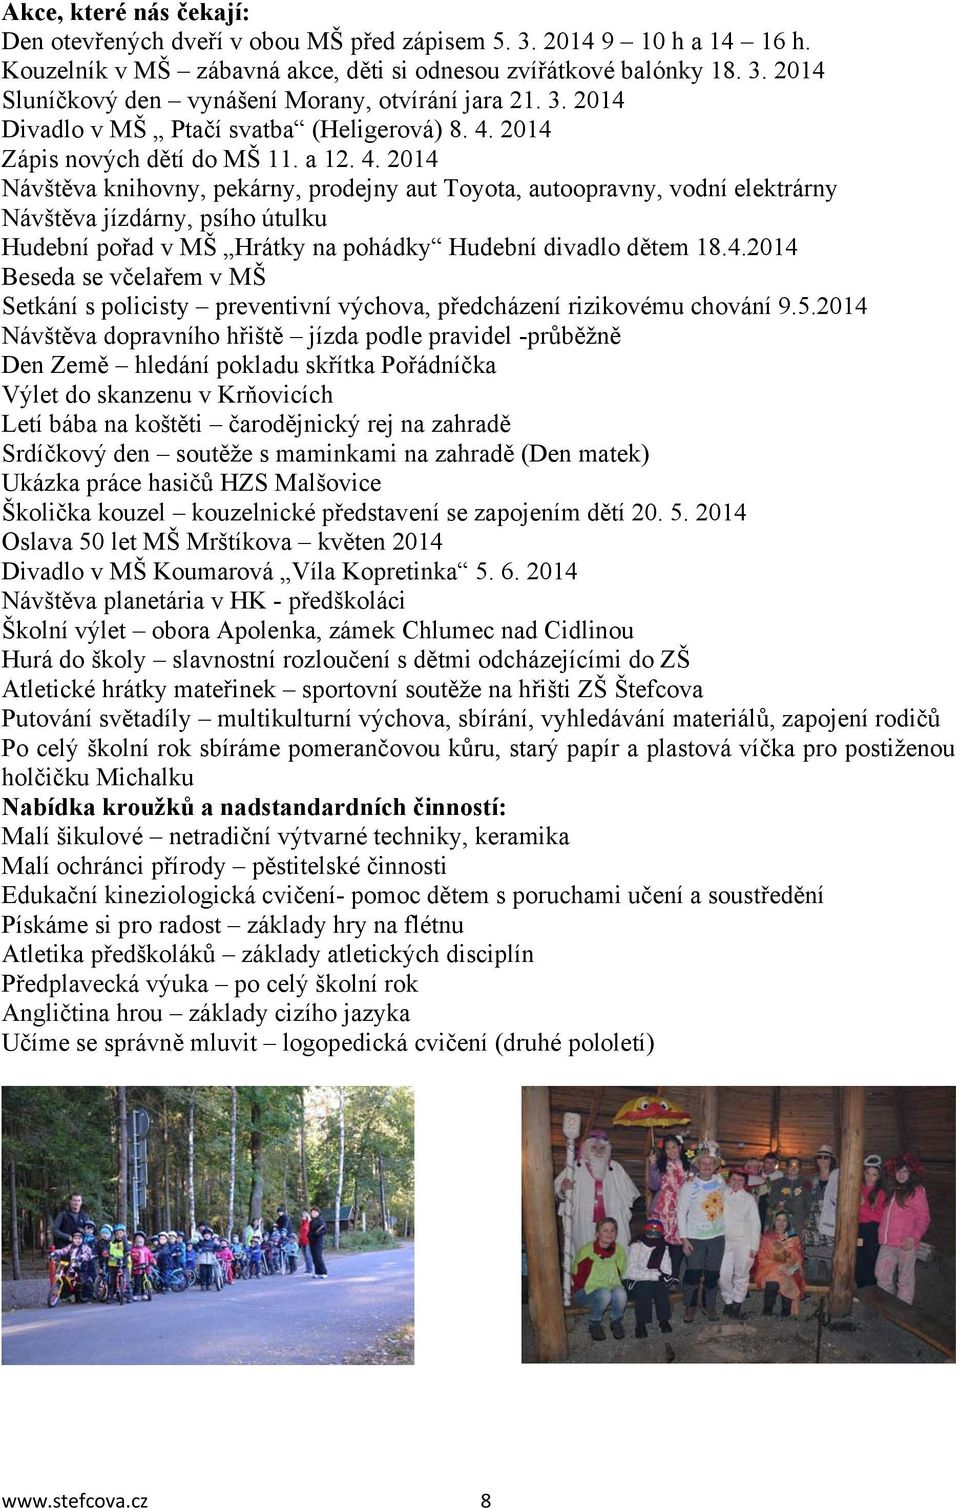 2014 Zápis nových dětí do MŠ 11. a 12. 4.